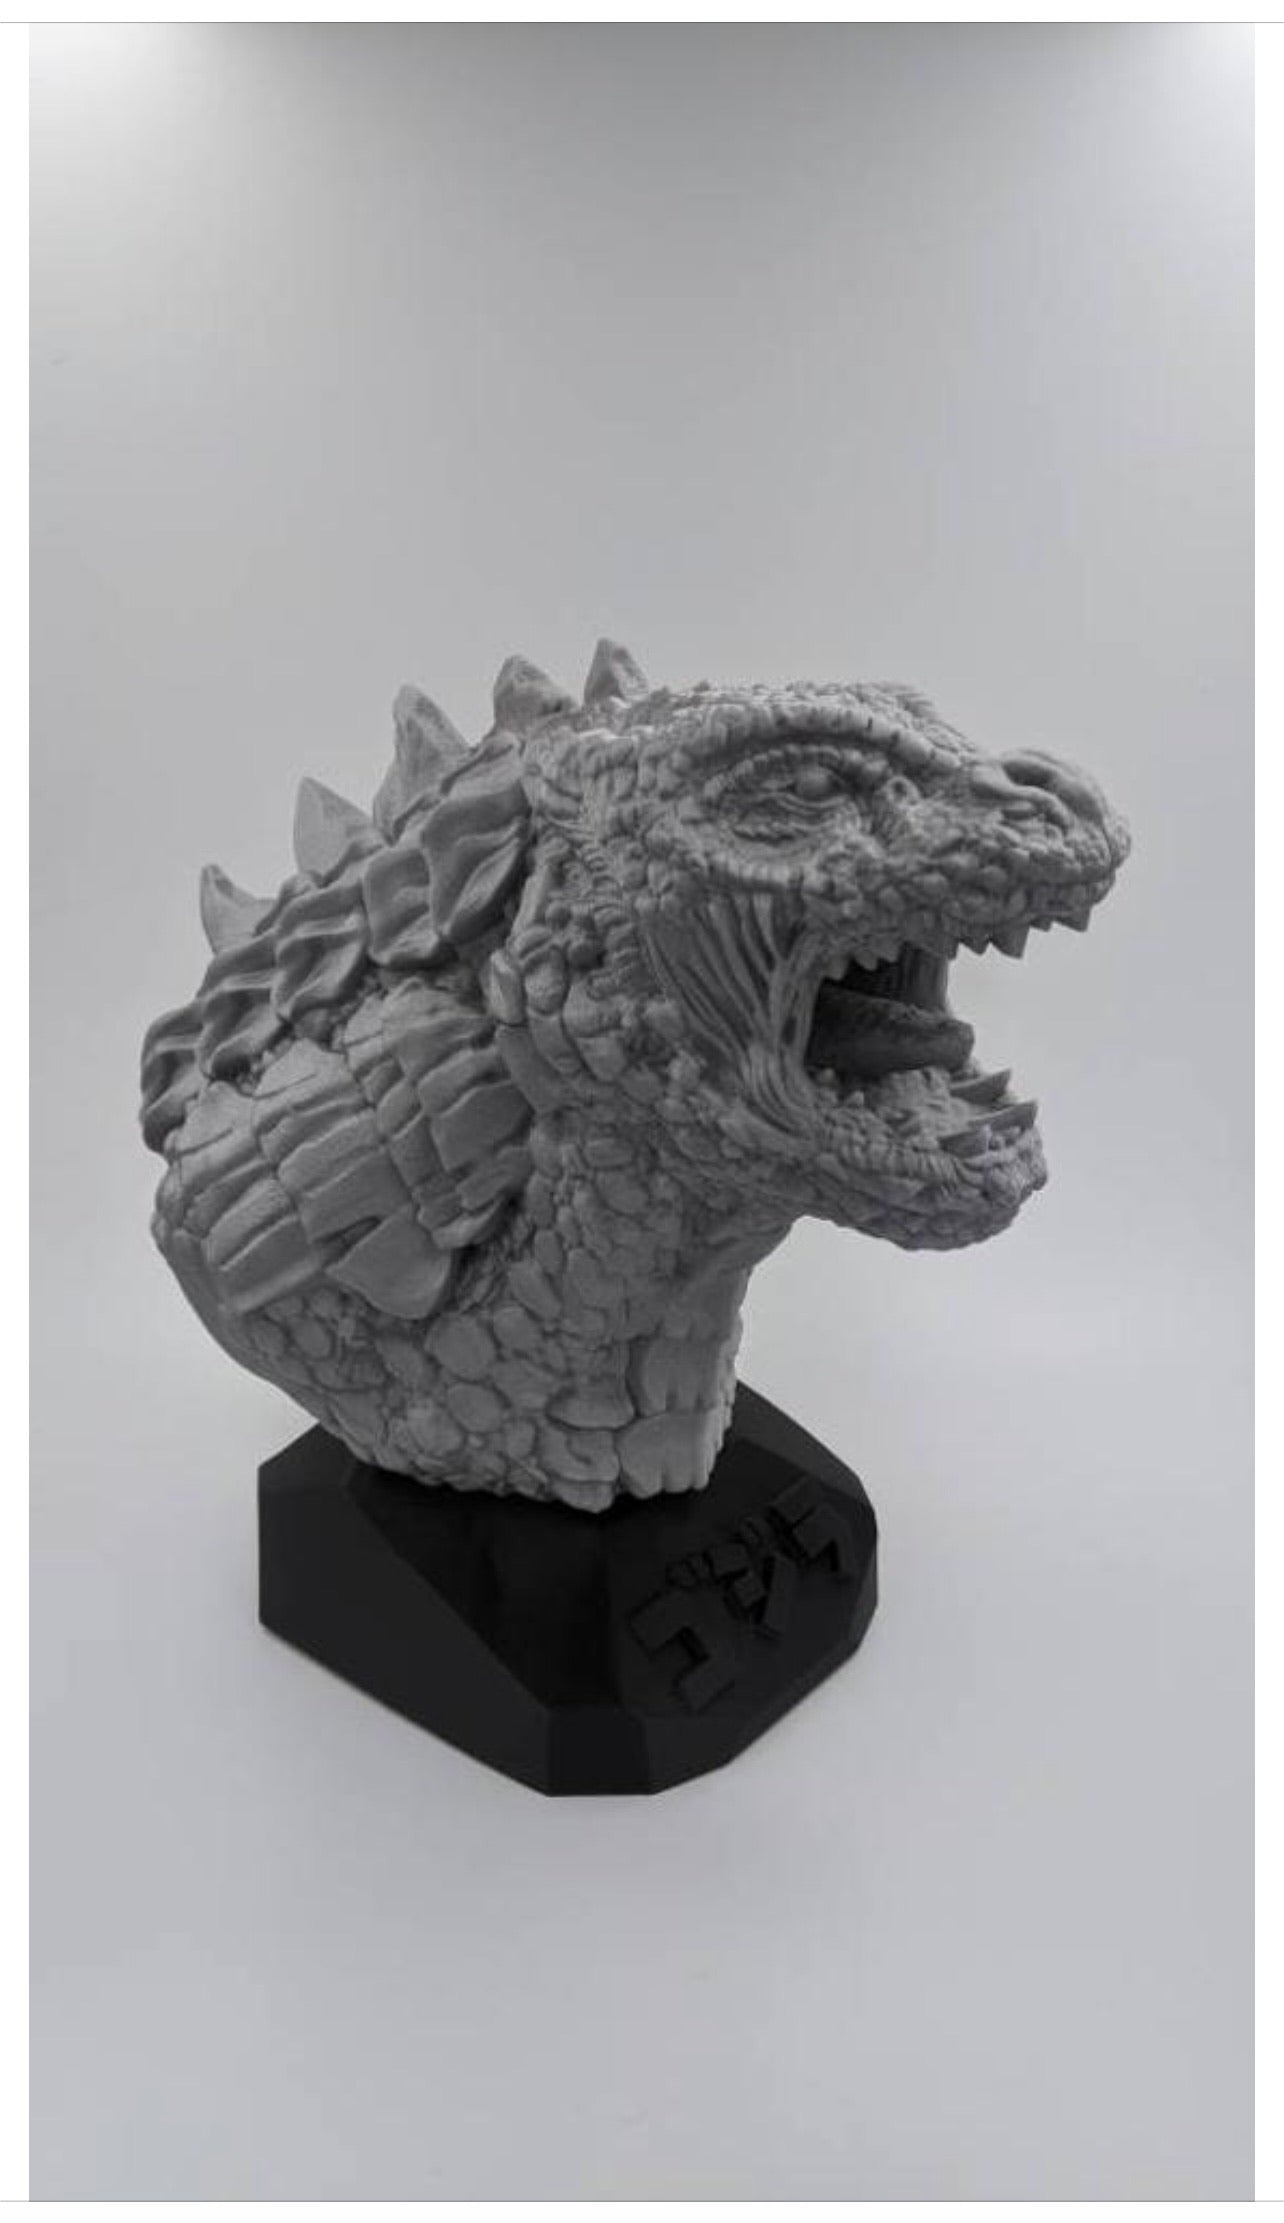 Godzilla King of Monsters